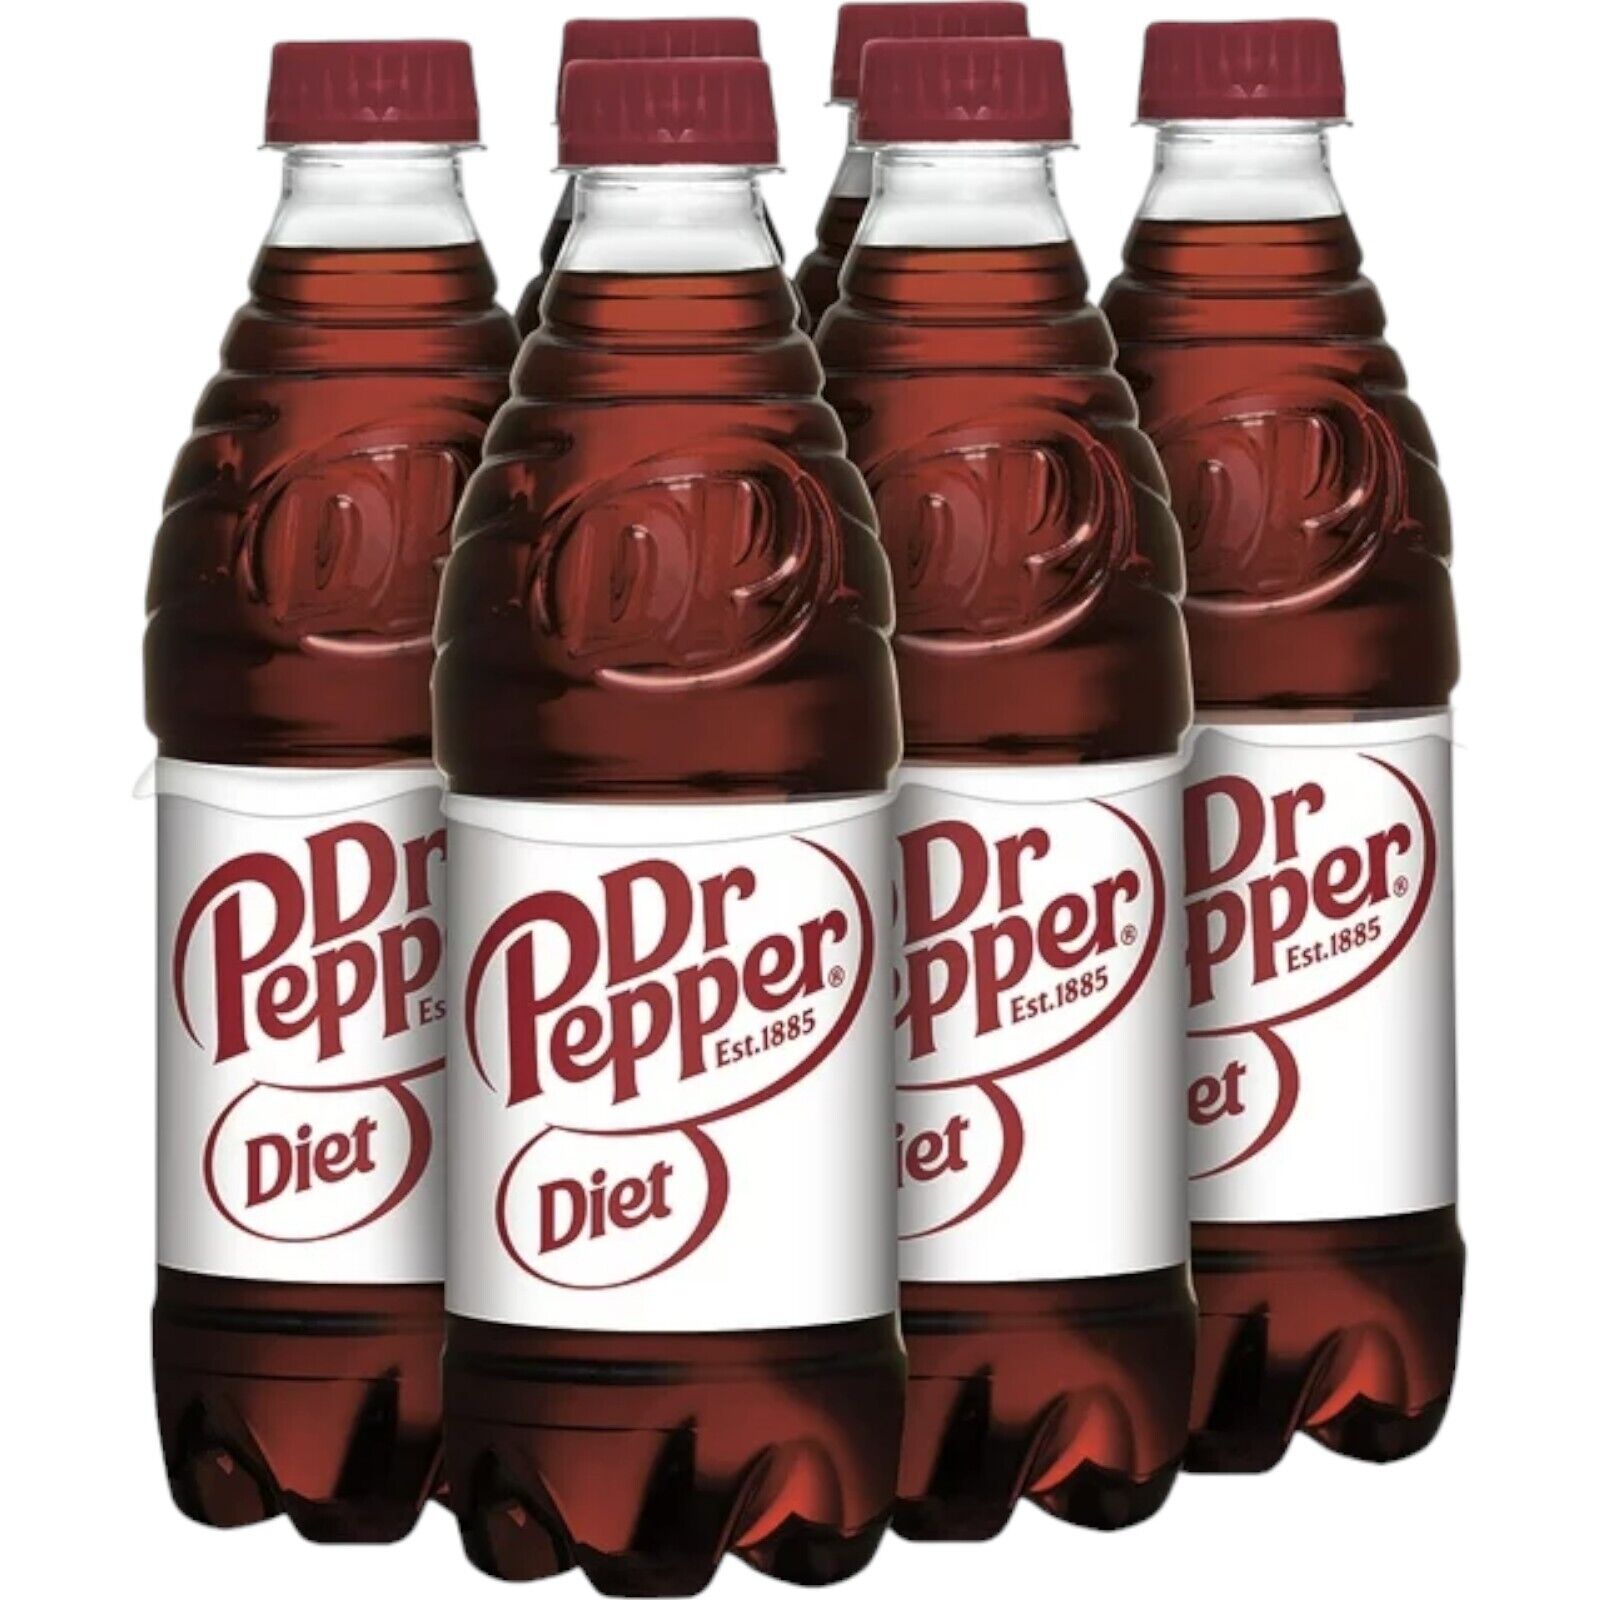 Diet Dr Pepper Soda Pack of 6 16.9oz Bottles Soft Drink Diet Dr Thunder Soda Pop